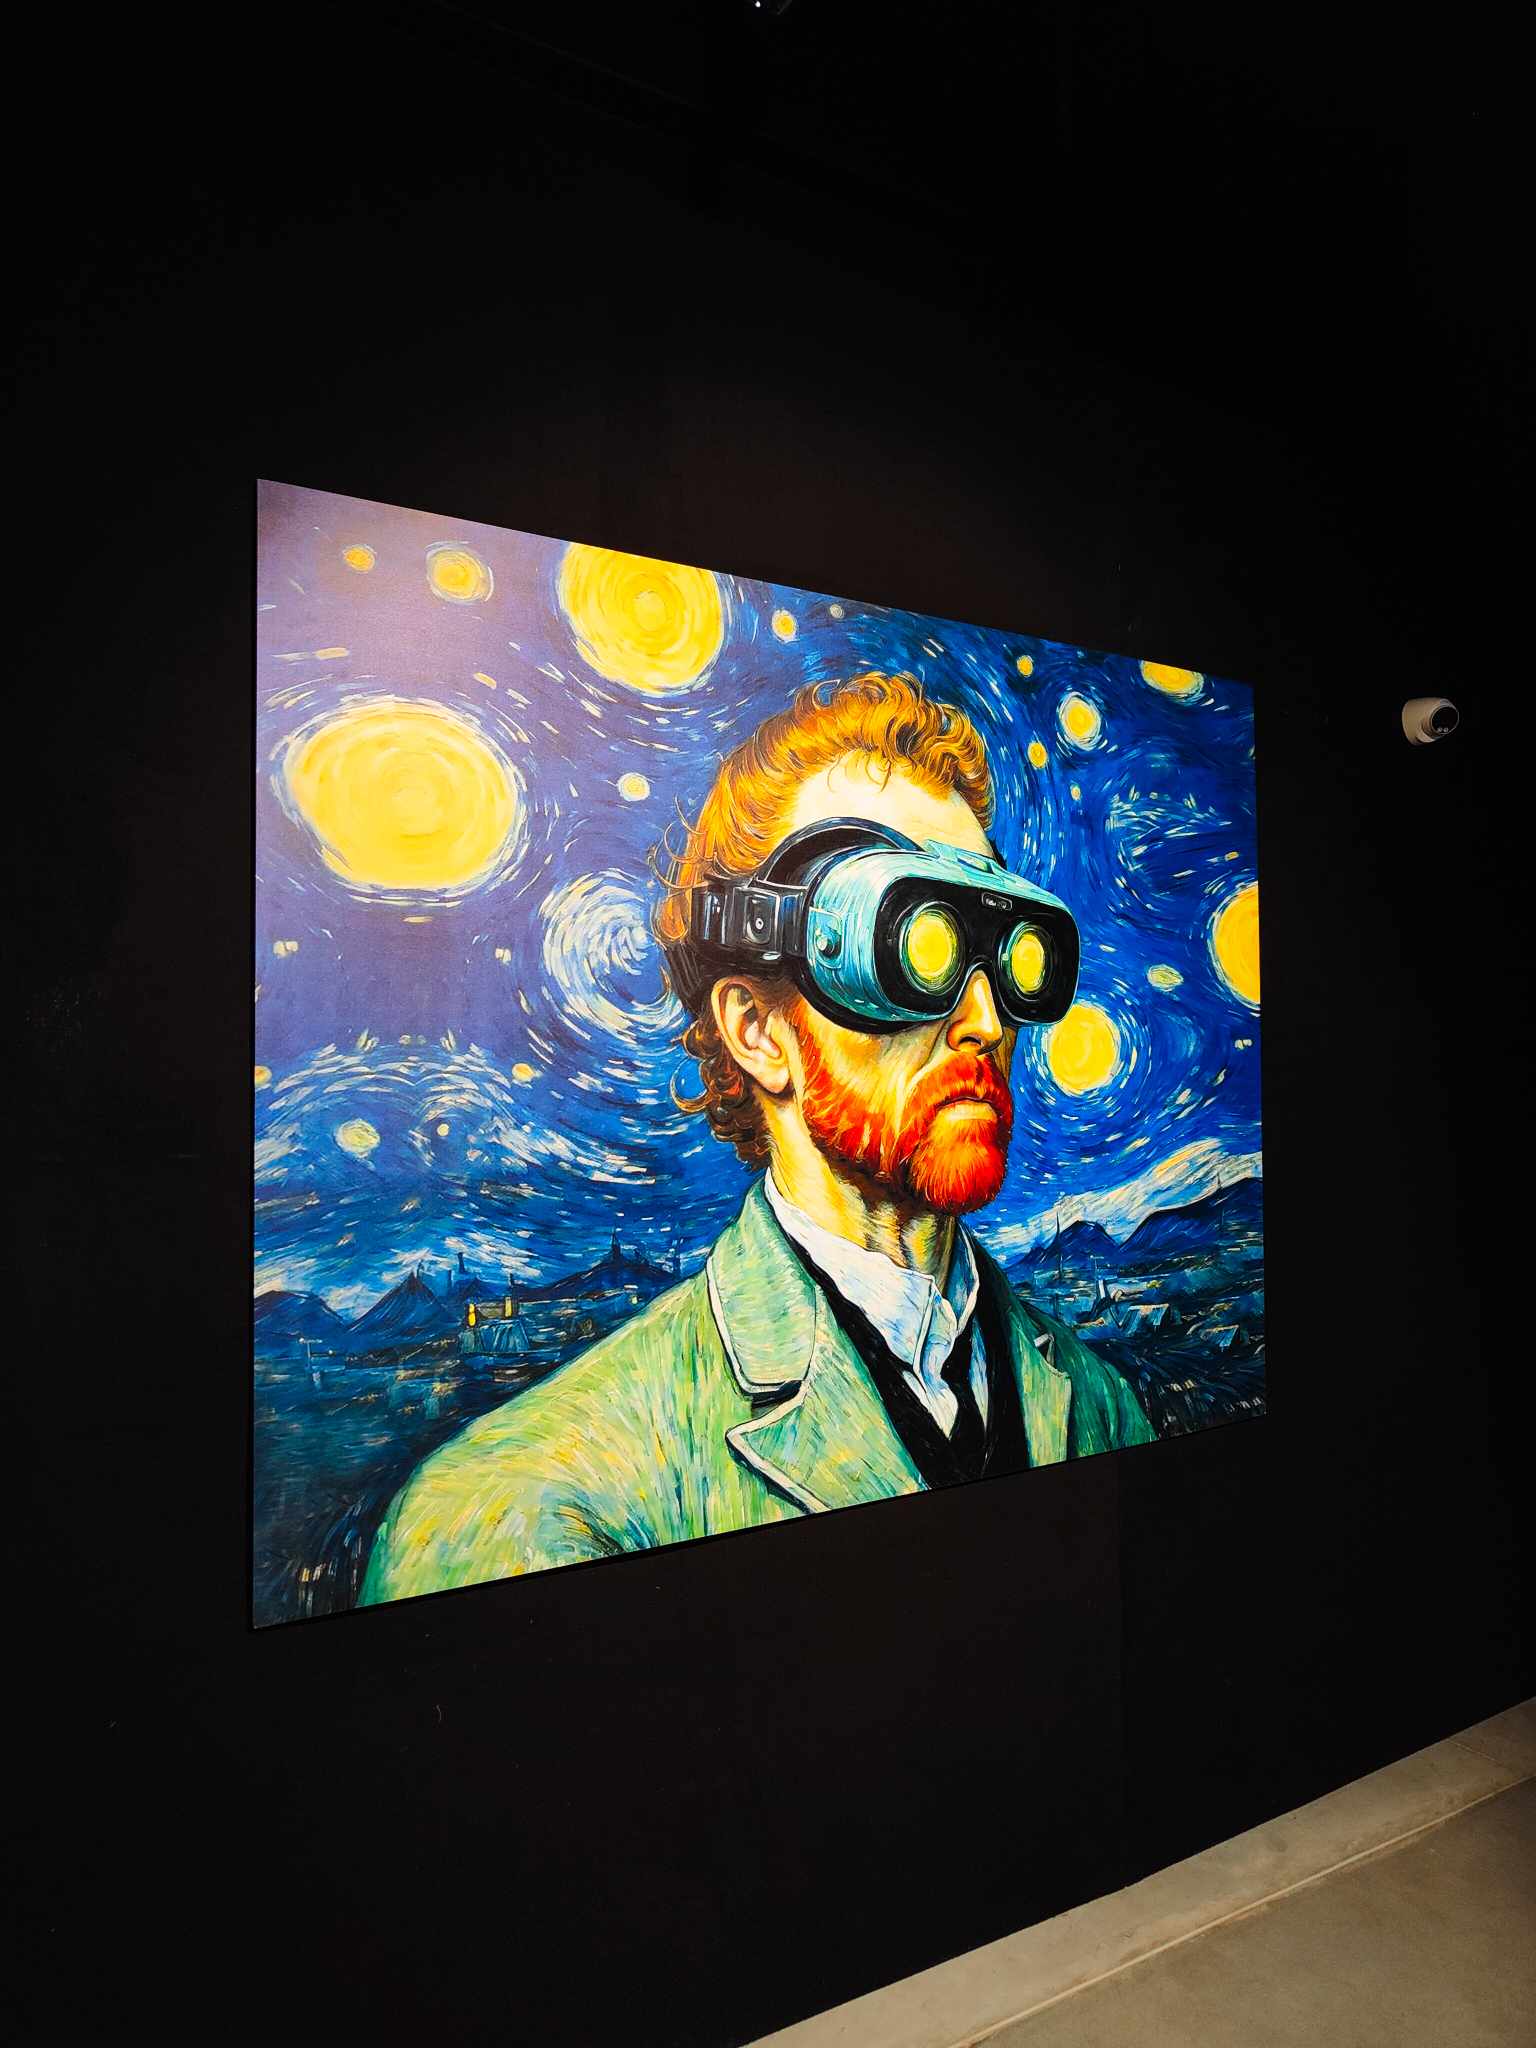 Multisensoryczna wystawa prac van Gogha w Krakowie, fot. Kinga Kuryło